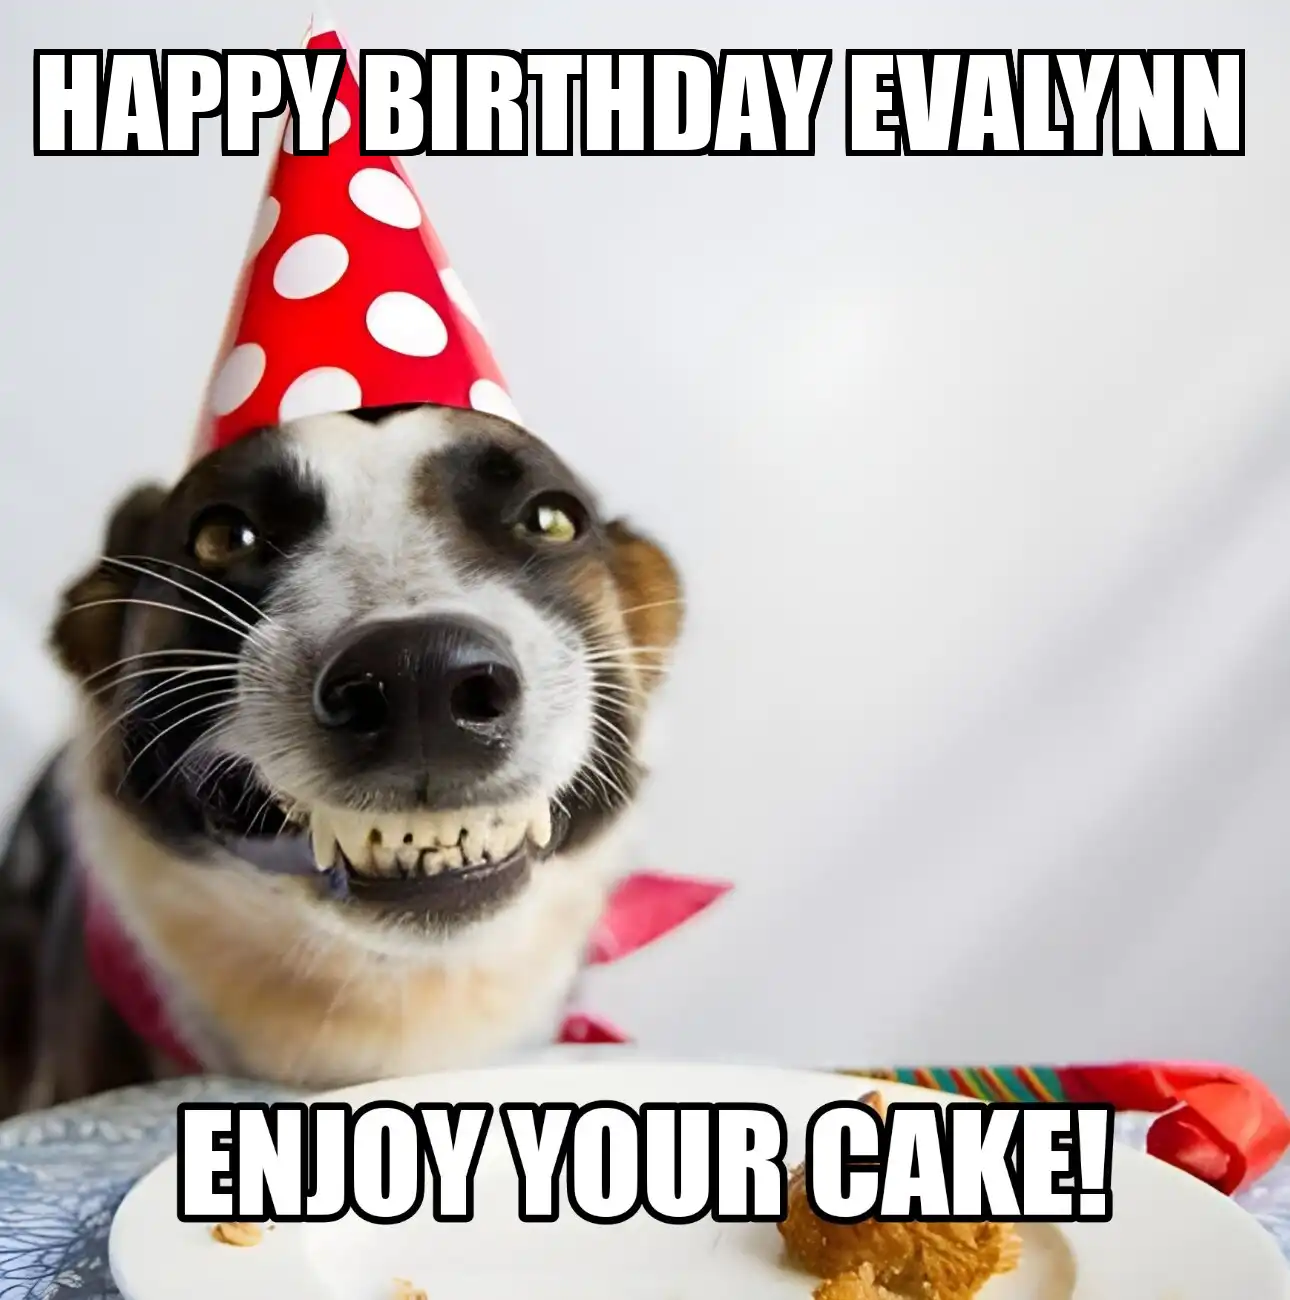 Happy Birthday Evalynn Enjoy Your Cake Dog Meme